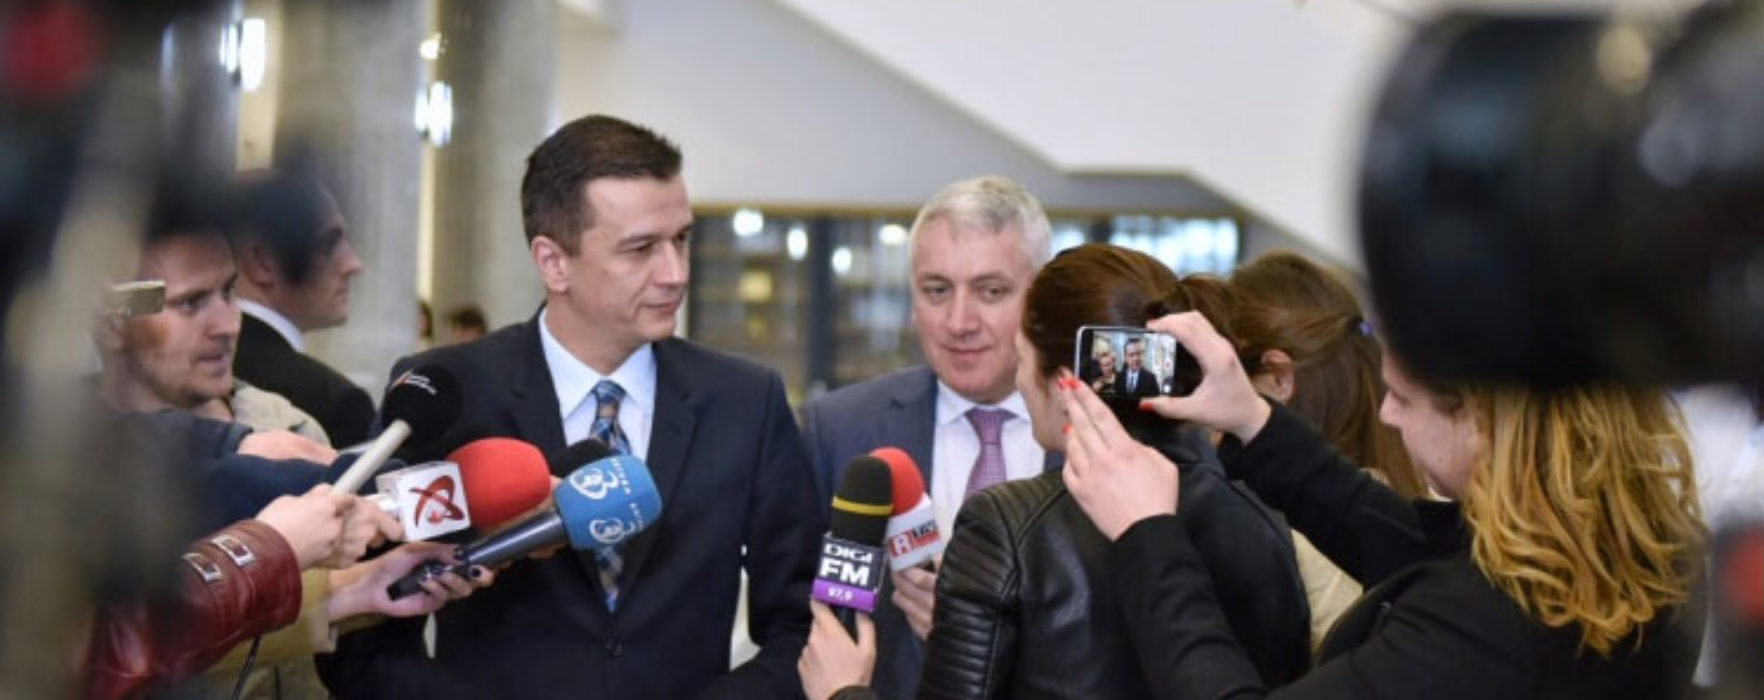 Premierul Grindeanu i-a cerut ministrului Transporturilor să meargă vineri în Dâmbovița pentru discuții despre infrastructură (video)